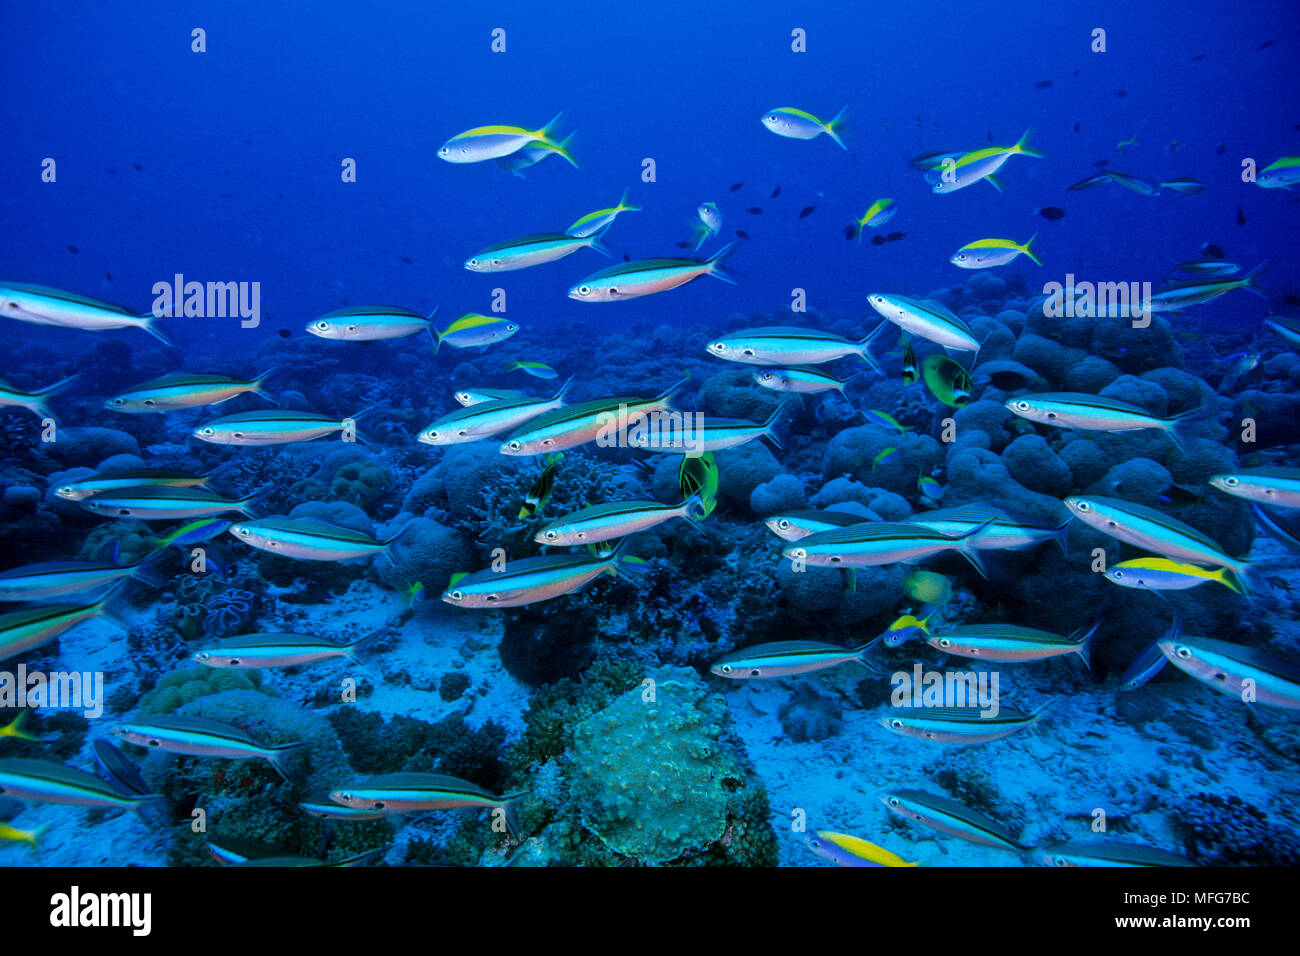 Secca di blue-dash fusilier, Pterocaesio tile, Aldabra Atoll, patrimonio mondiale naturale, Seychelles, Oceano Indiano Data: 24.06.08 RIF: ZB777 115630 Foto Stock